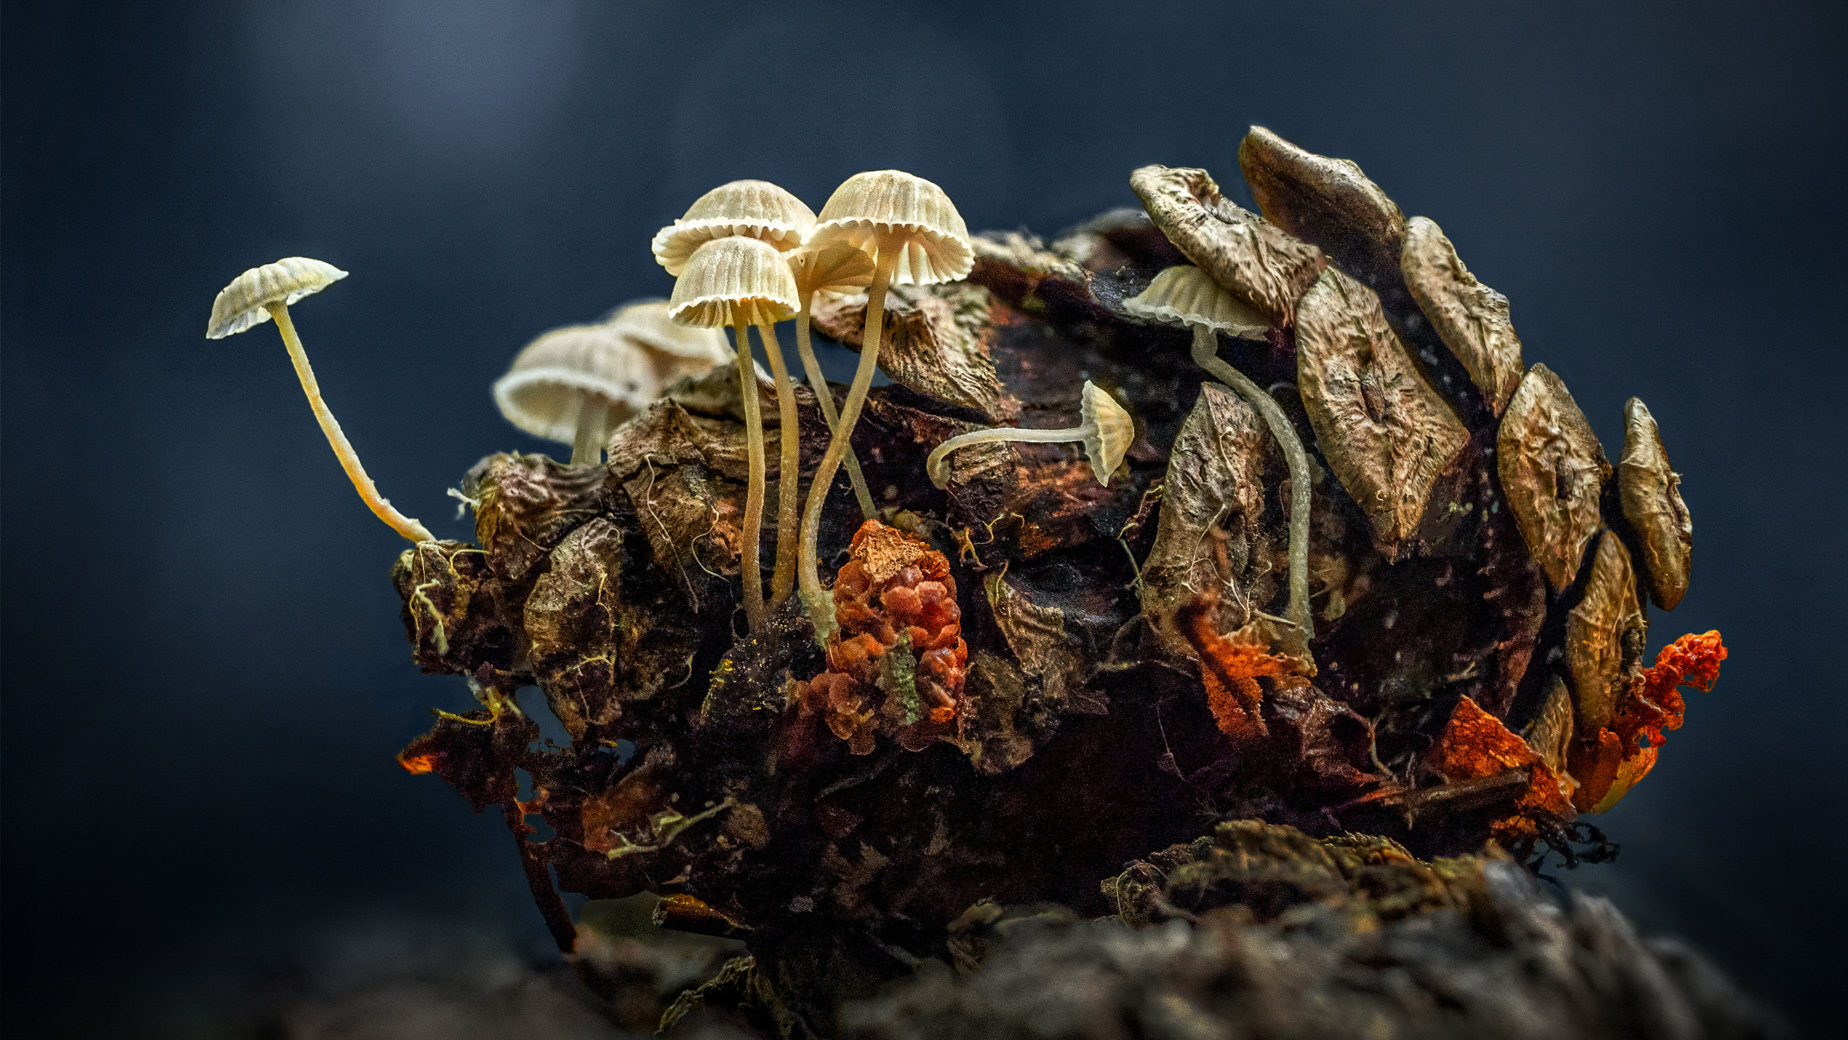 Pine cone mushrooms by Marianna Armata